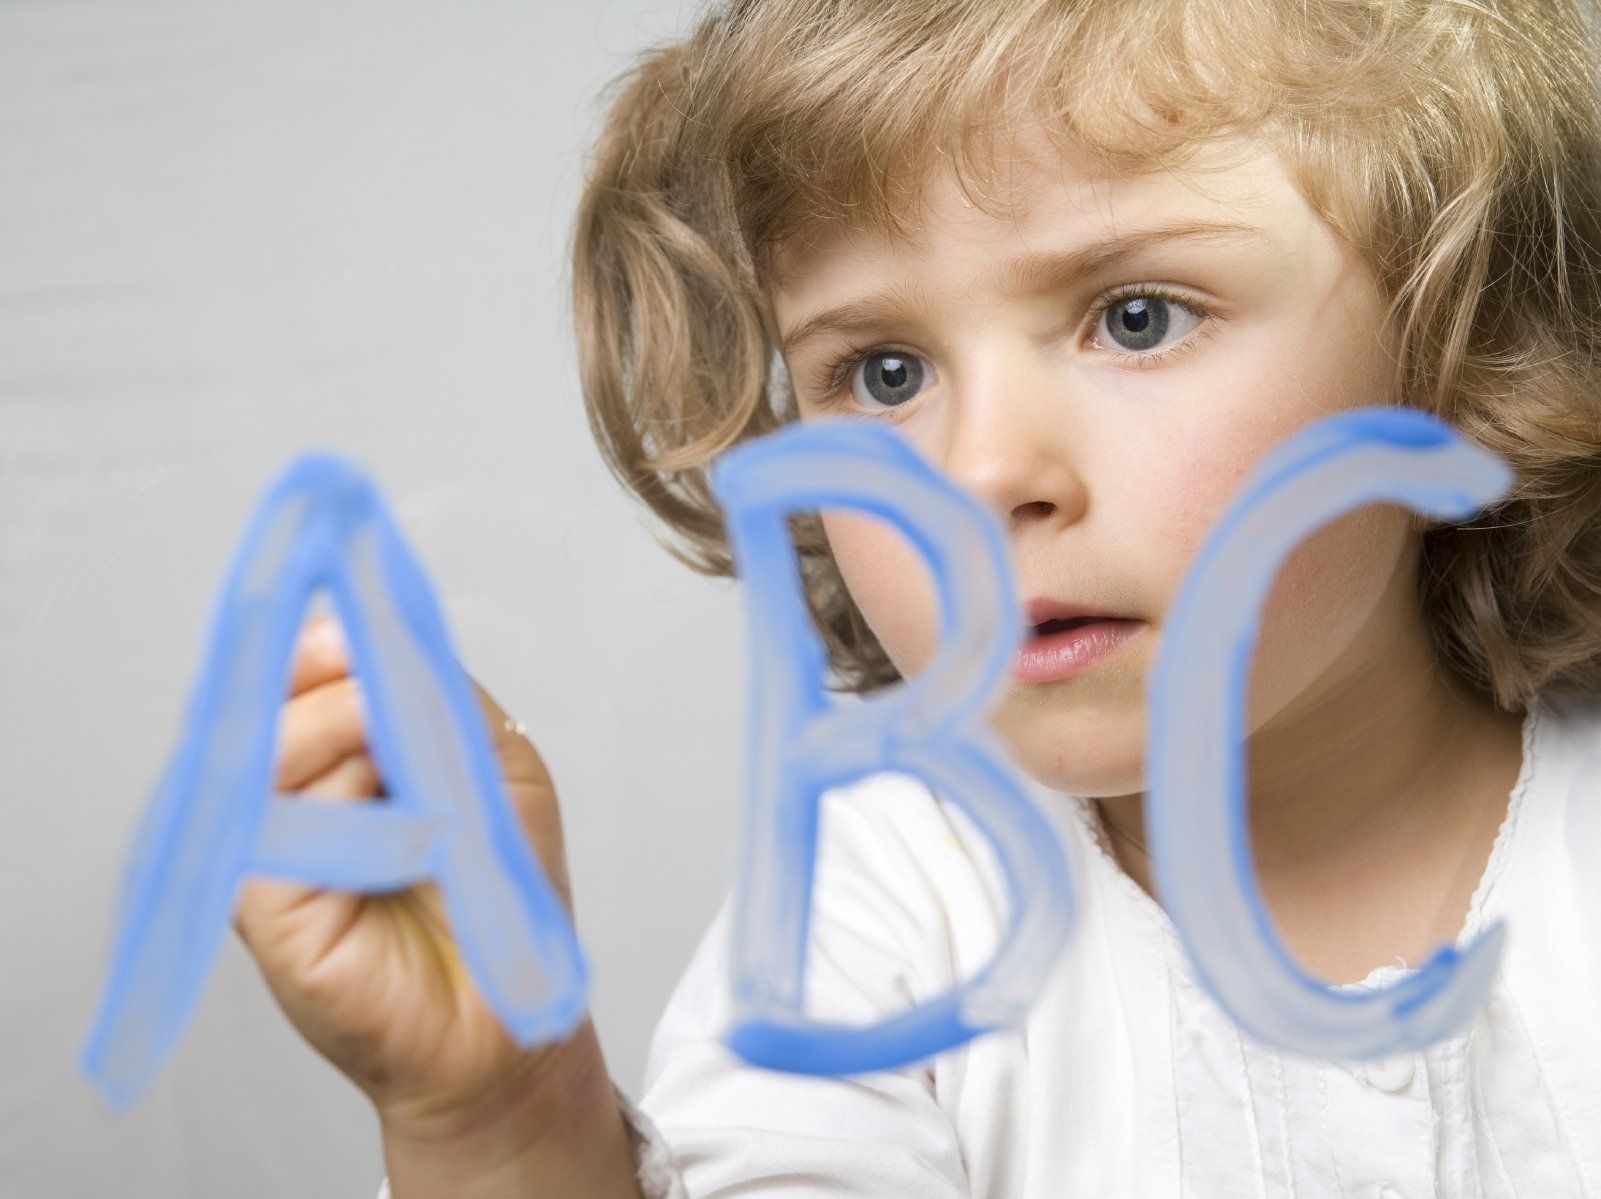 Fortdauernde frühkindliche Reflexe und ihre Auswirkungen auf Aufmerksamkeitssteuerung